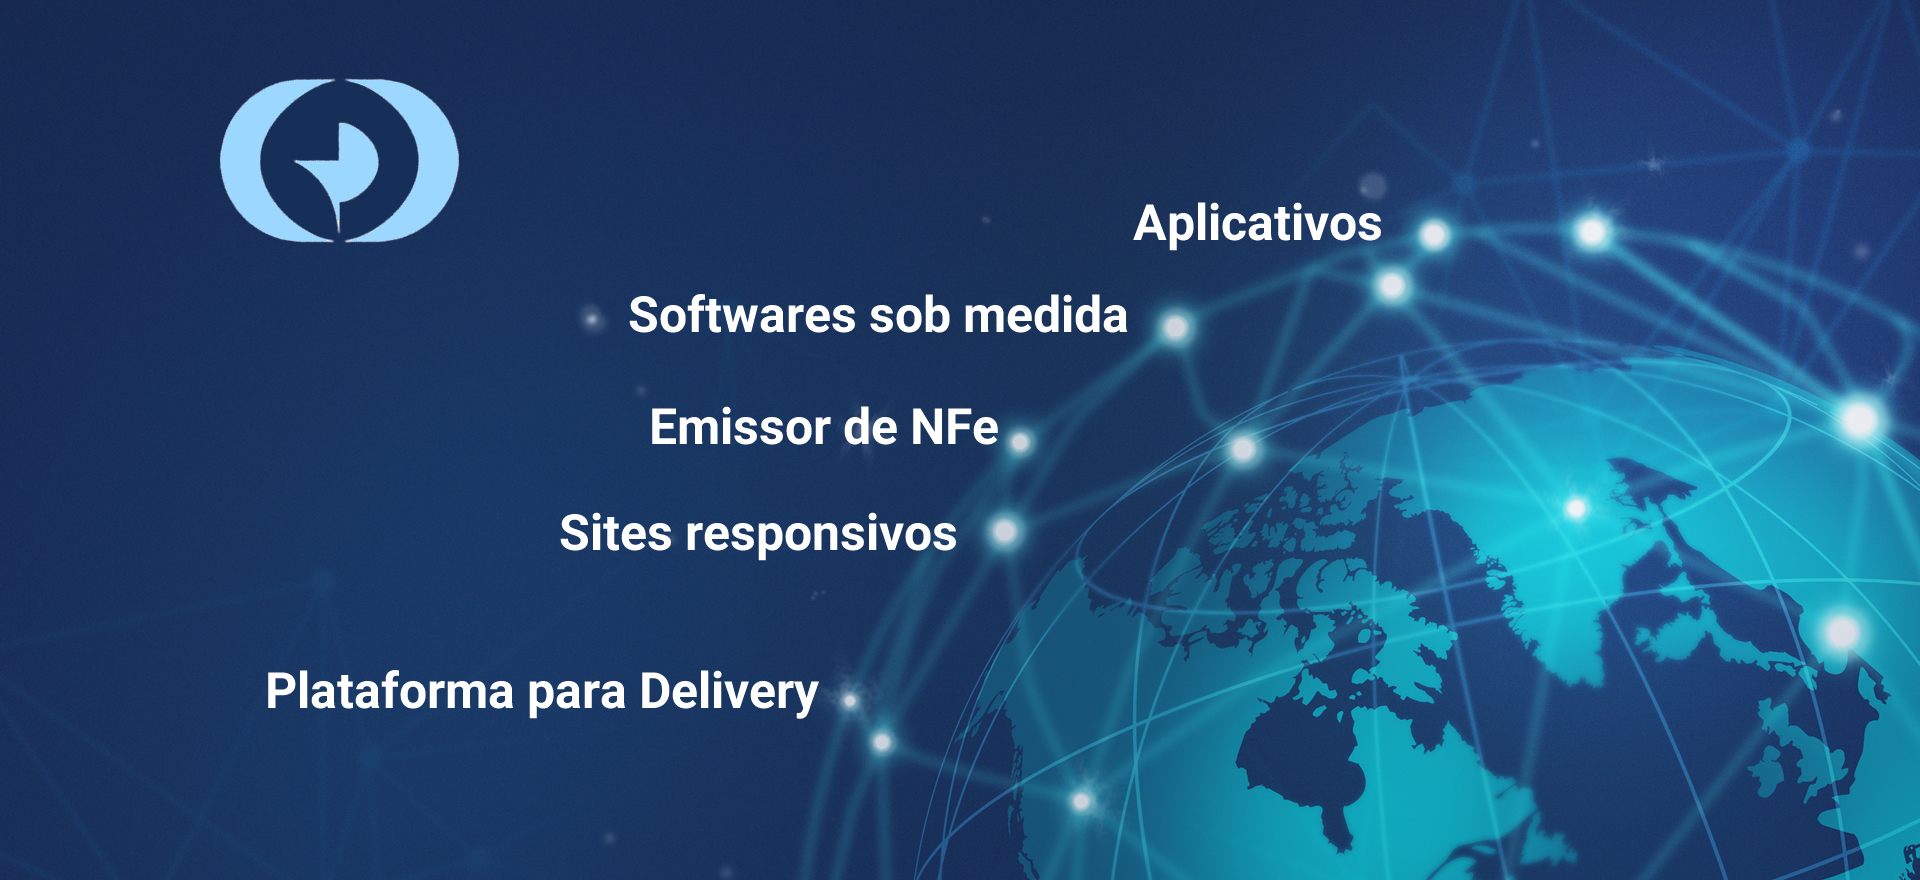 Aplicativos - Softwares sob medida - Emissor de NFe - Sites Responsivos - Plataforma para Delivery